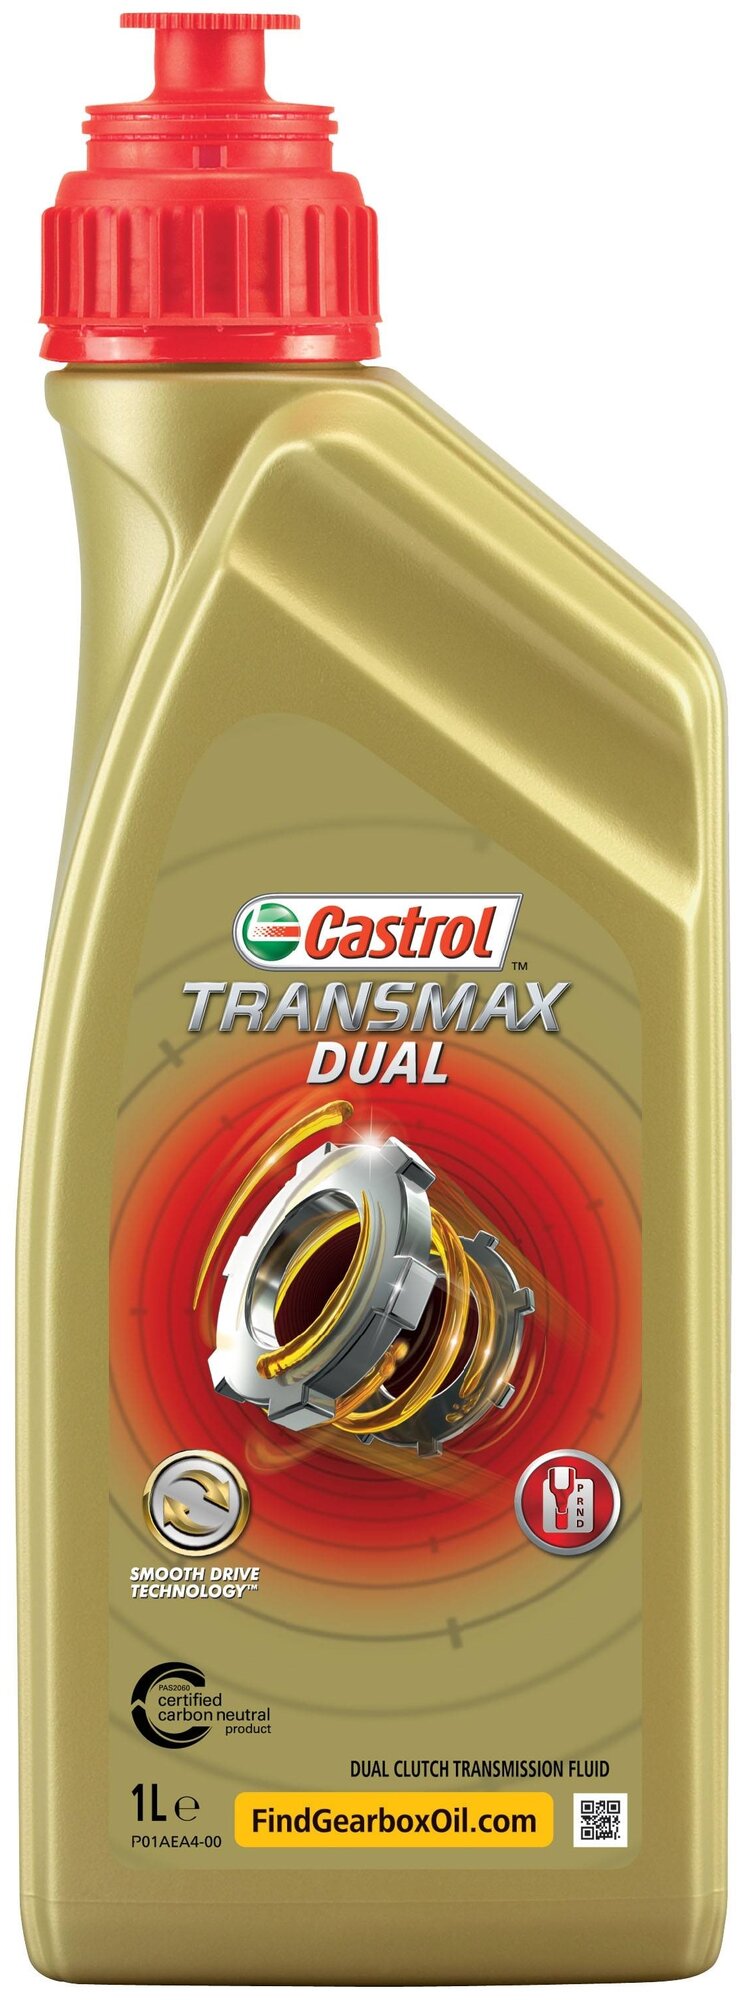 Масло трансмиссионное Castrol Transmax DUAL, 75W, 1 л, 1 шт.